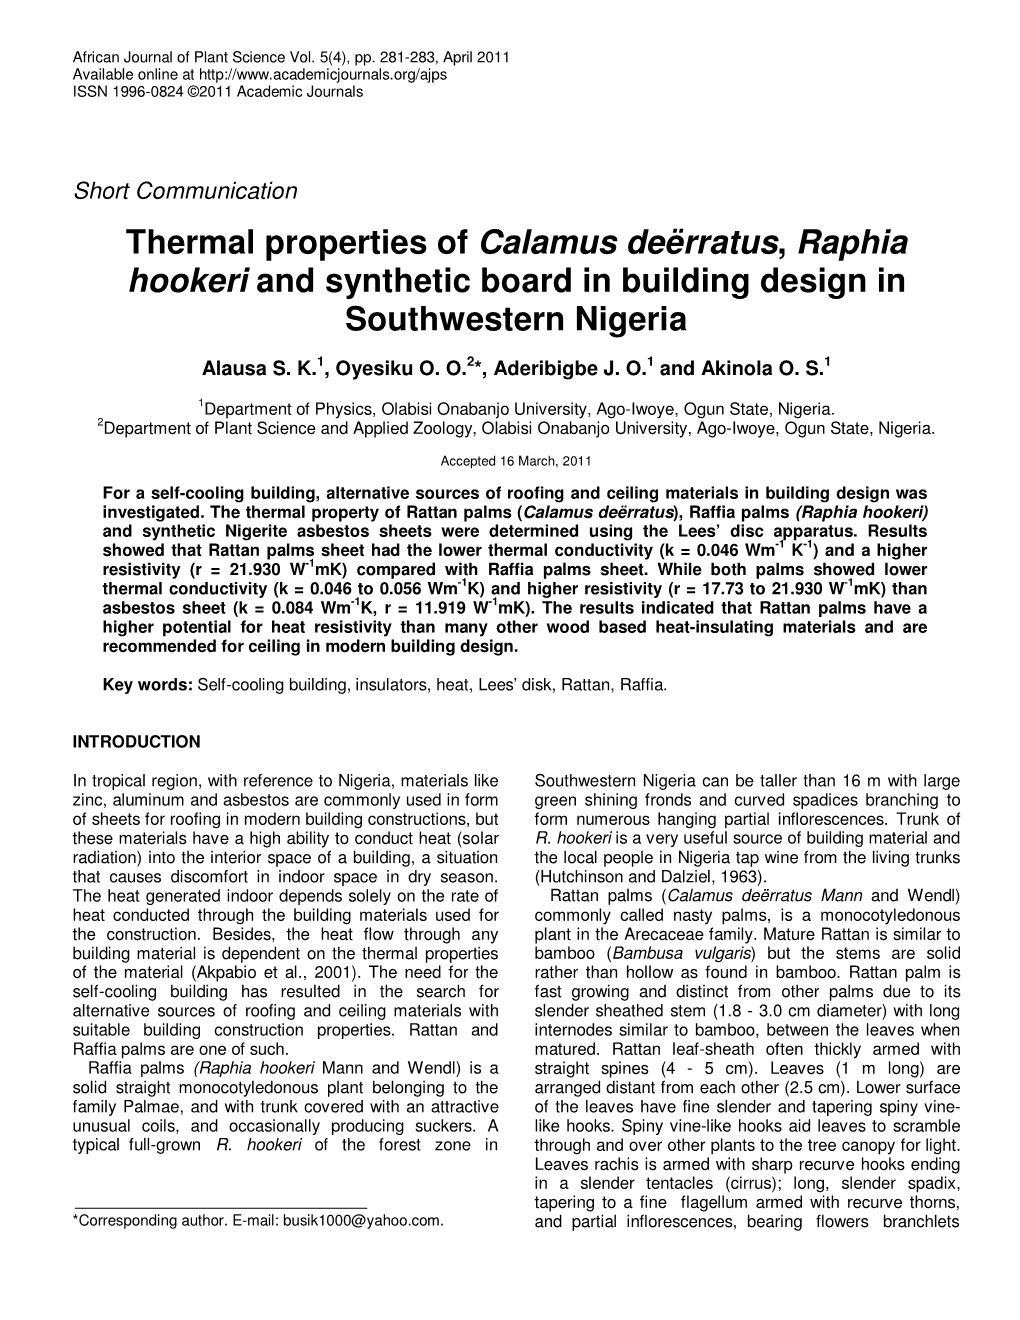 Thermal Properties of Calamus Deërratus, Raphia Hookeri And